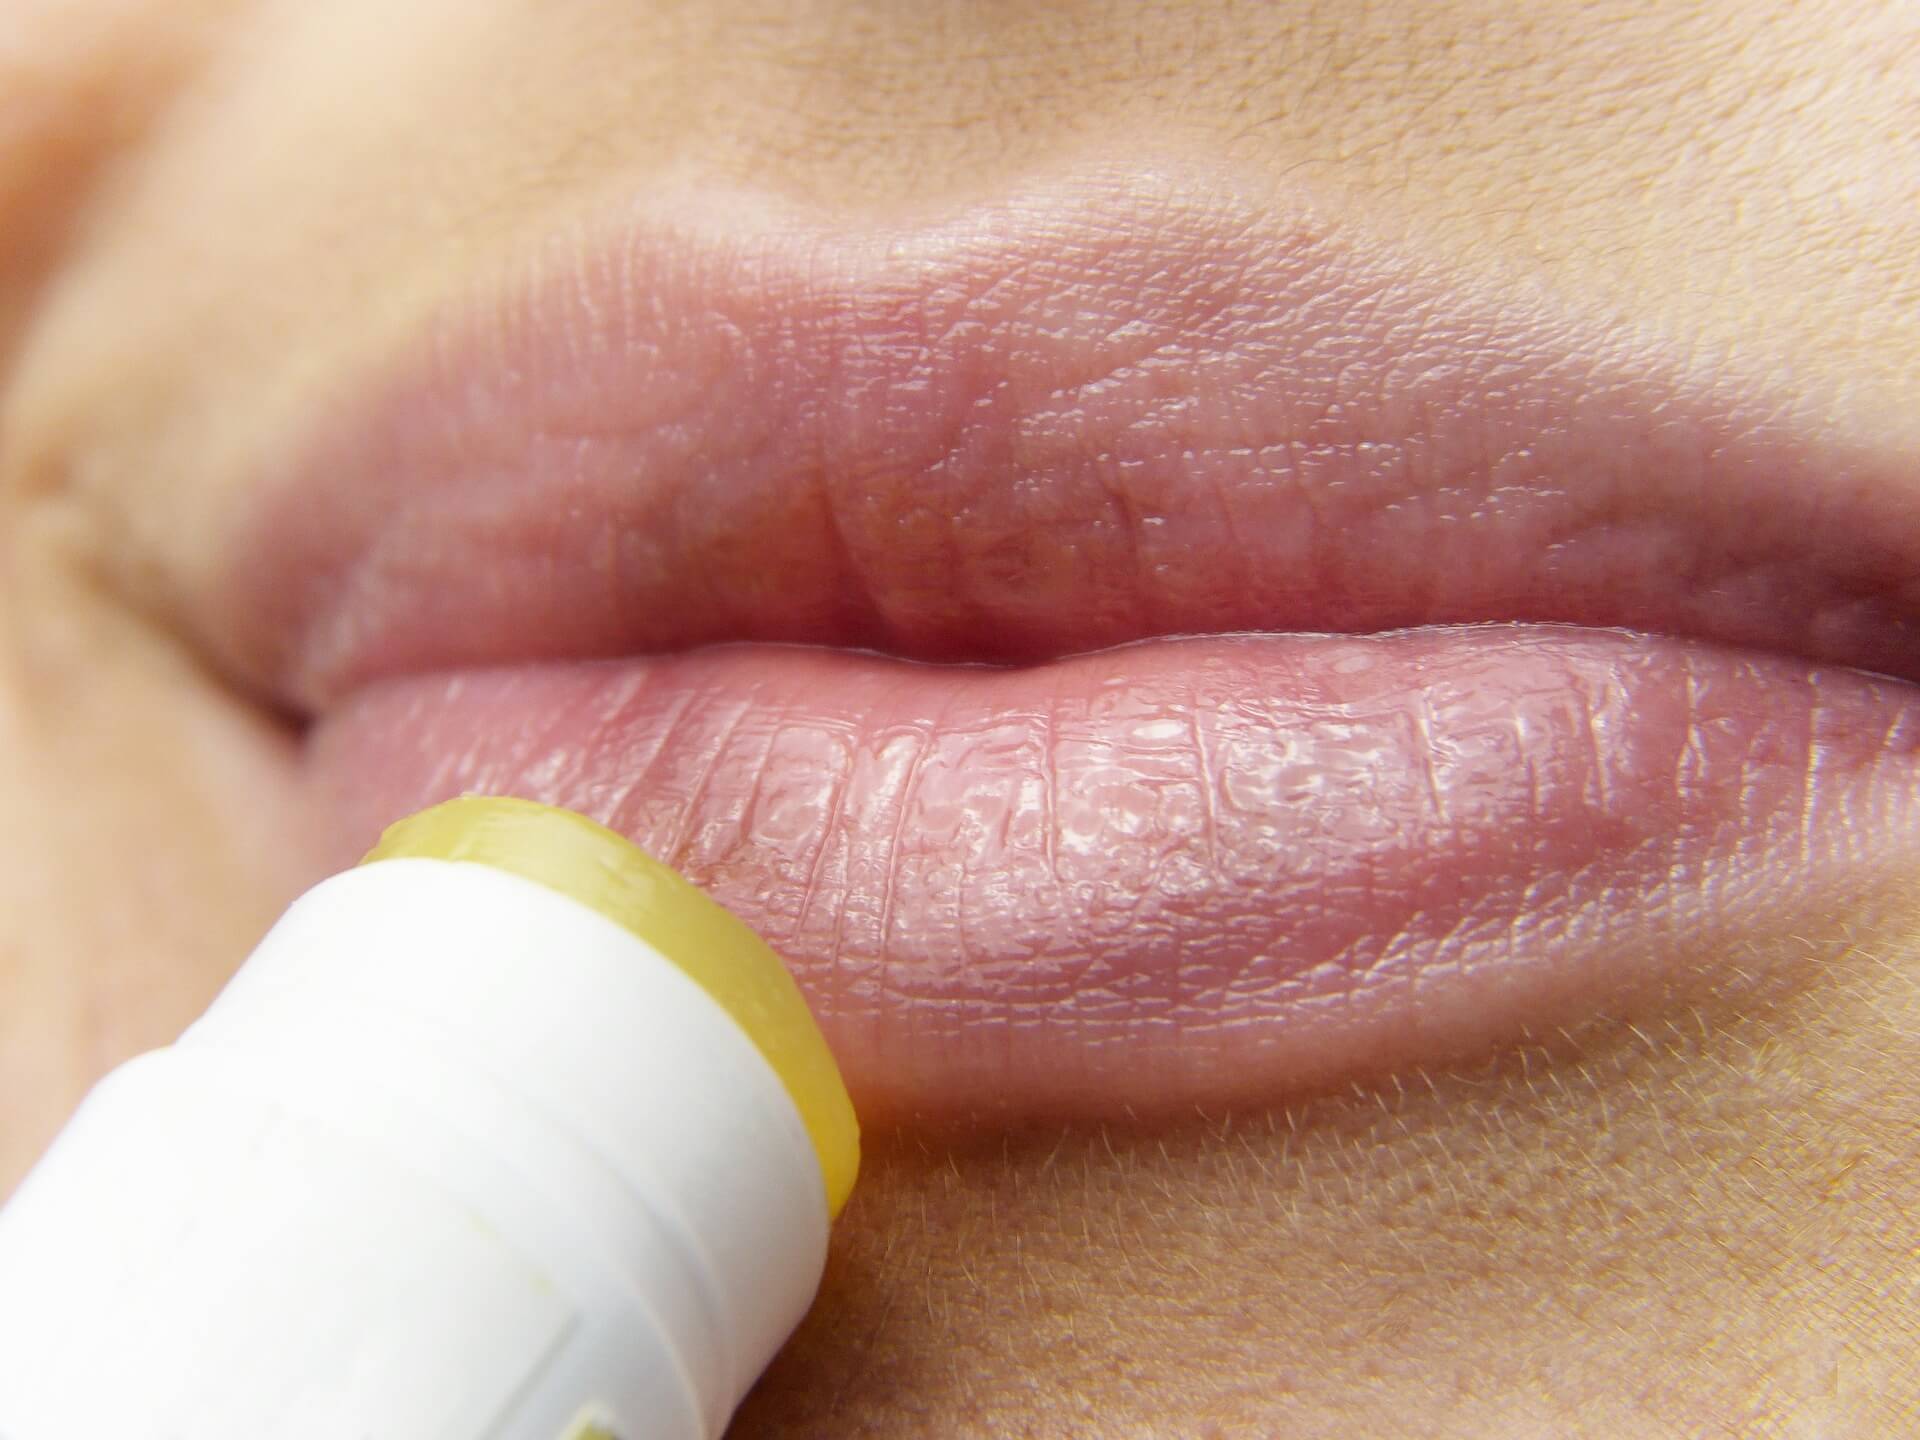 Opryszczka na ustach – przyczyny, objawy, leczenie i powikłania. Czy można się nią zarazić?